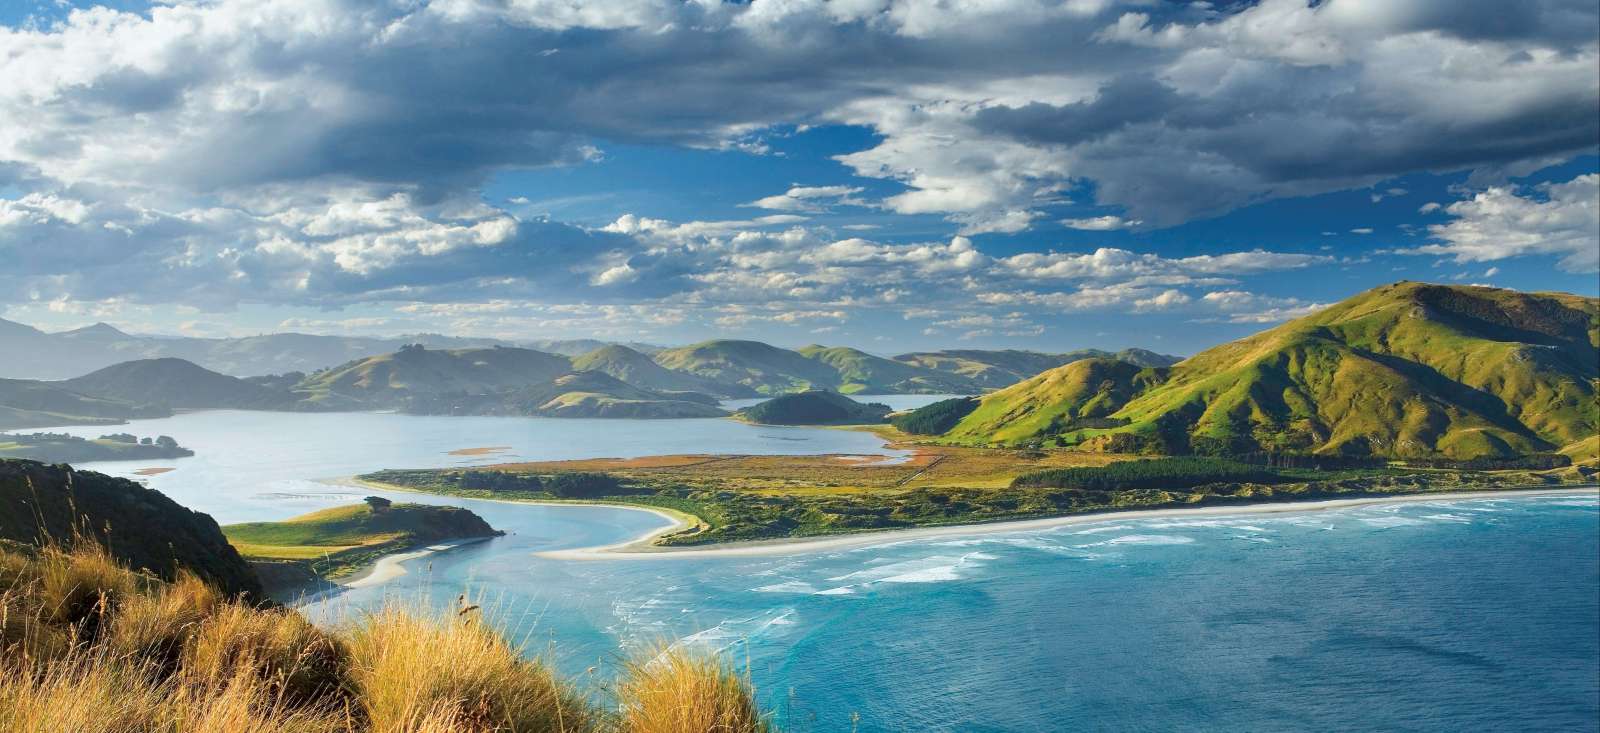 Voyage découverte - Nouvelle-Zélande : Découverte du pays Kiwi. Version confort !